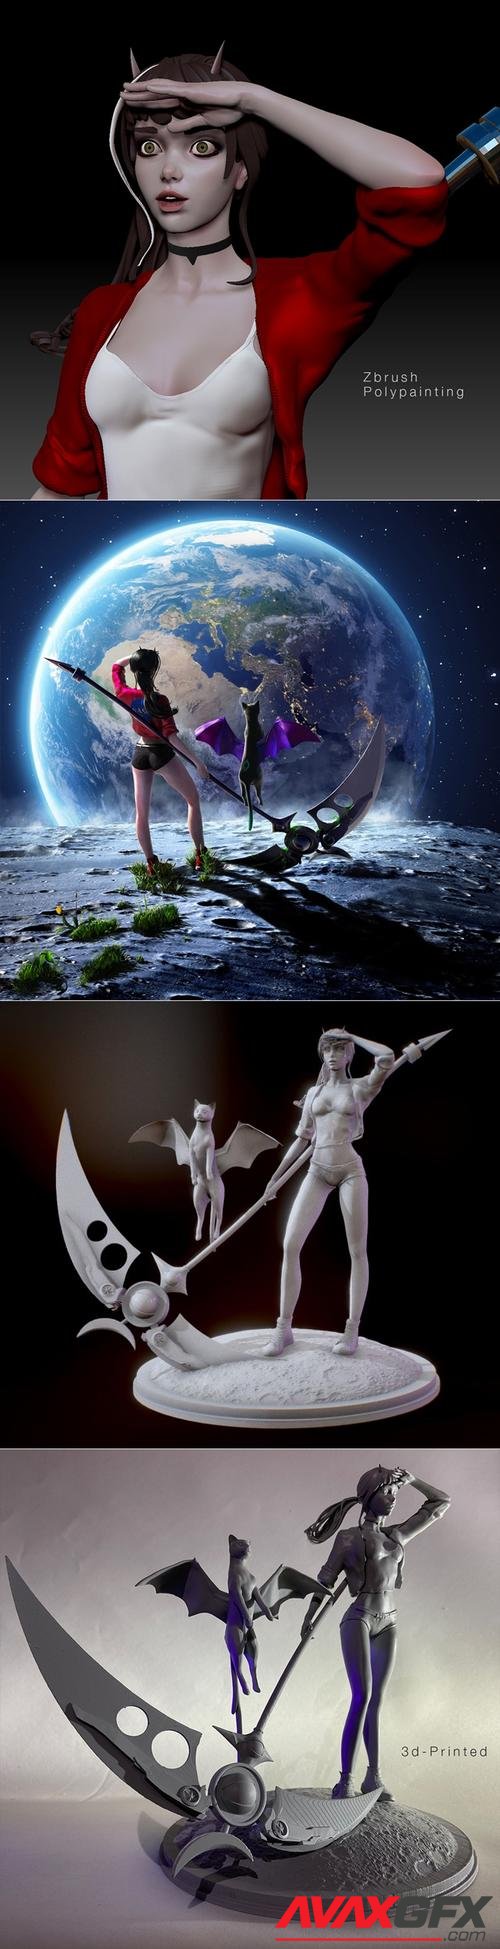 Luna and Nova Lunatic Adventures – 3D Print